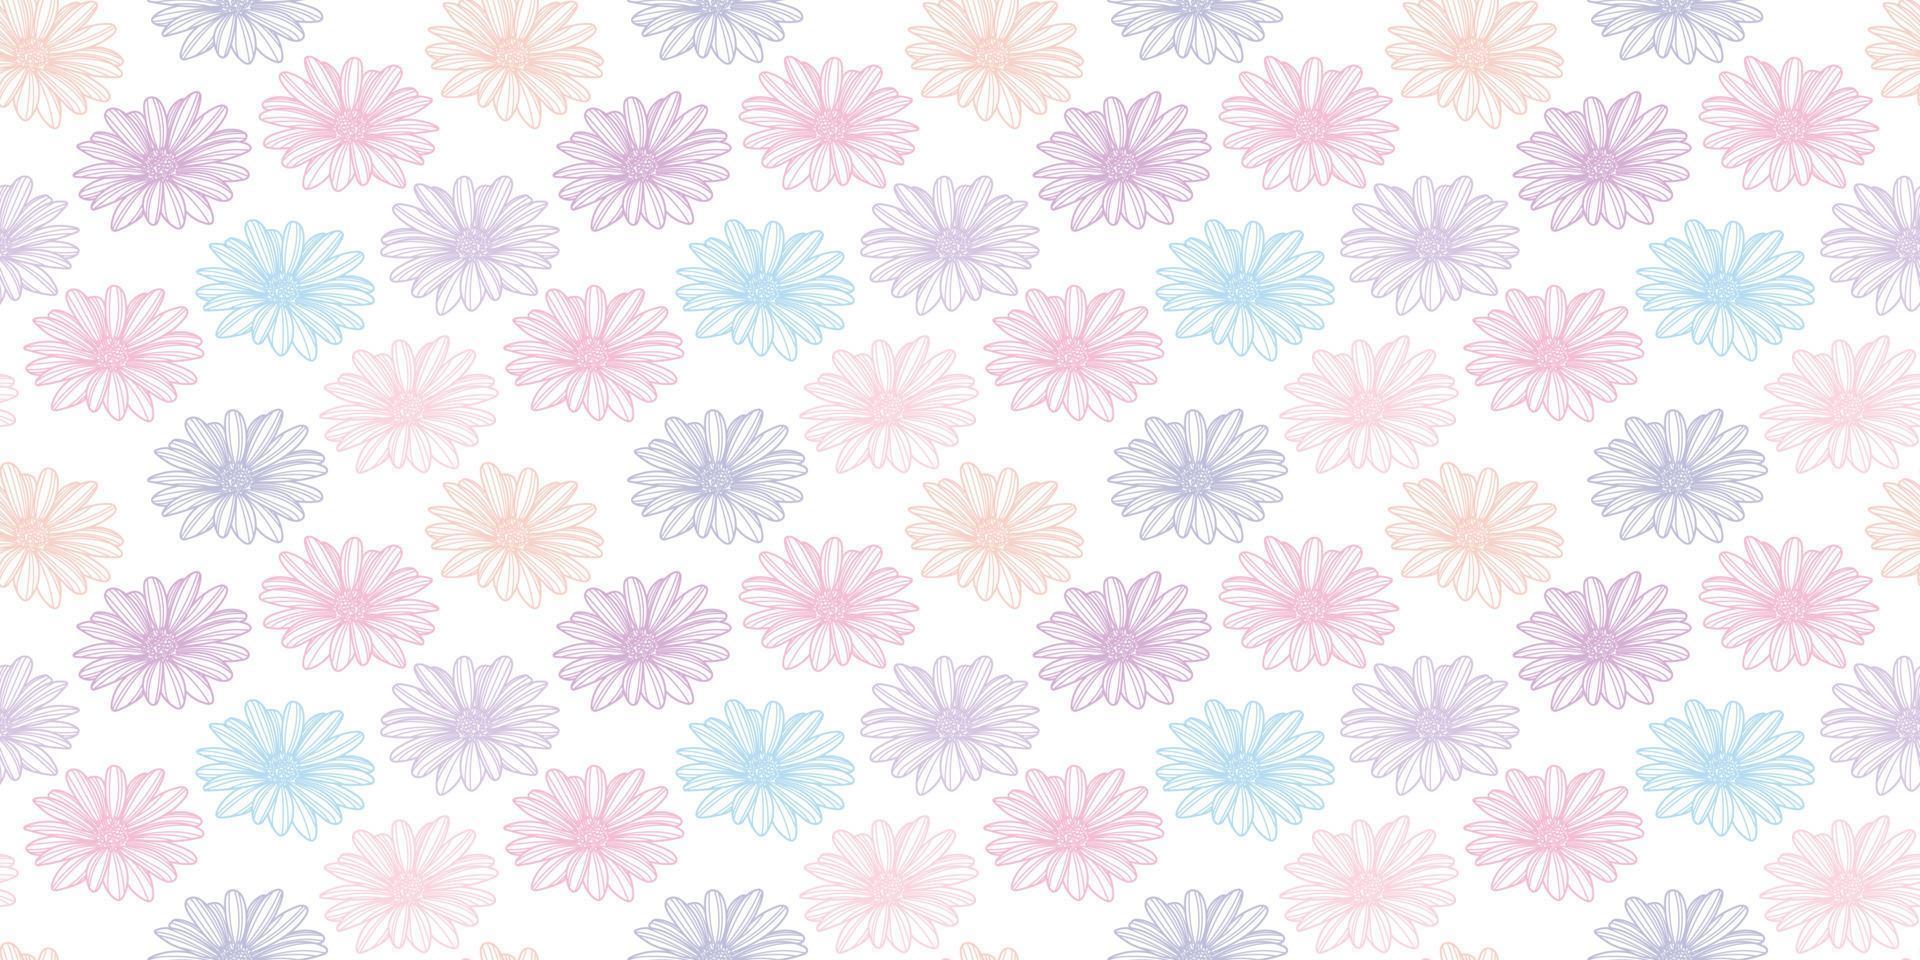 Gänseblümchen Blume Vektormuster Hintergrund. pastellfarbene Blumen. vektor